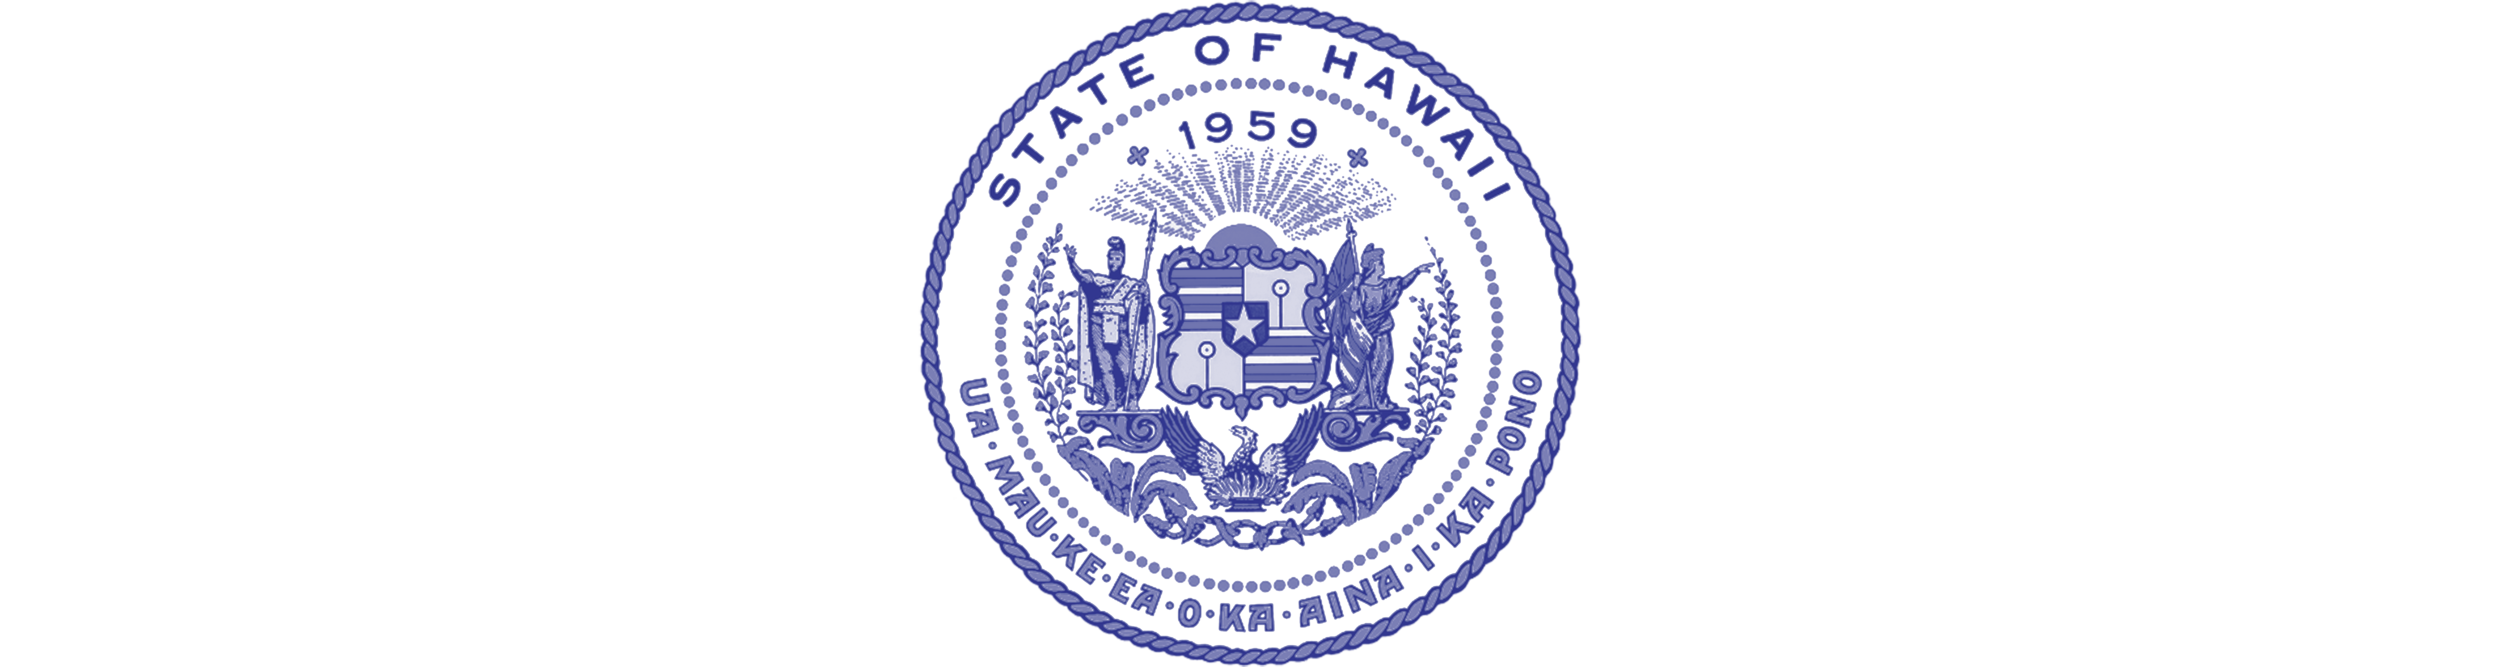 HPHA-ресурсы-лого-штат- Гавайи.пнг